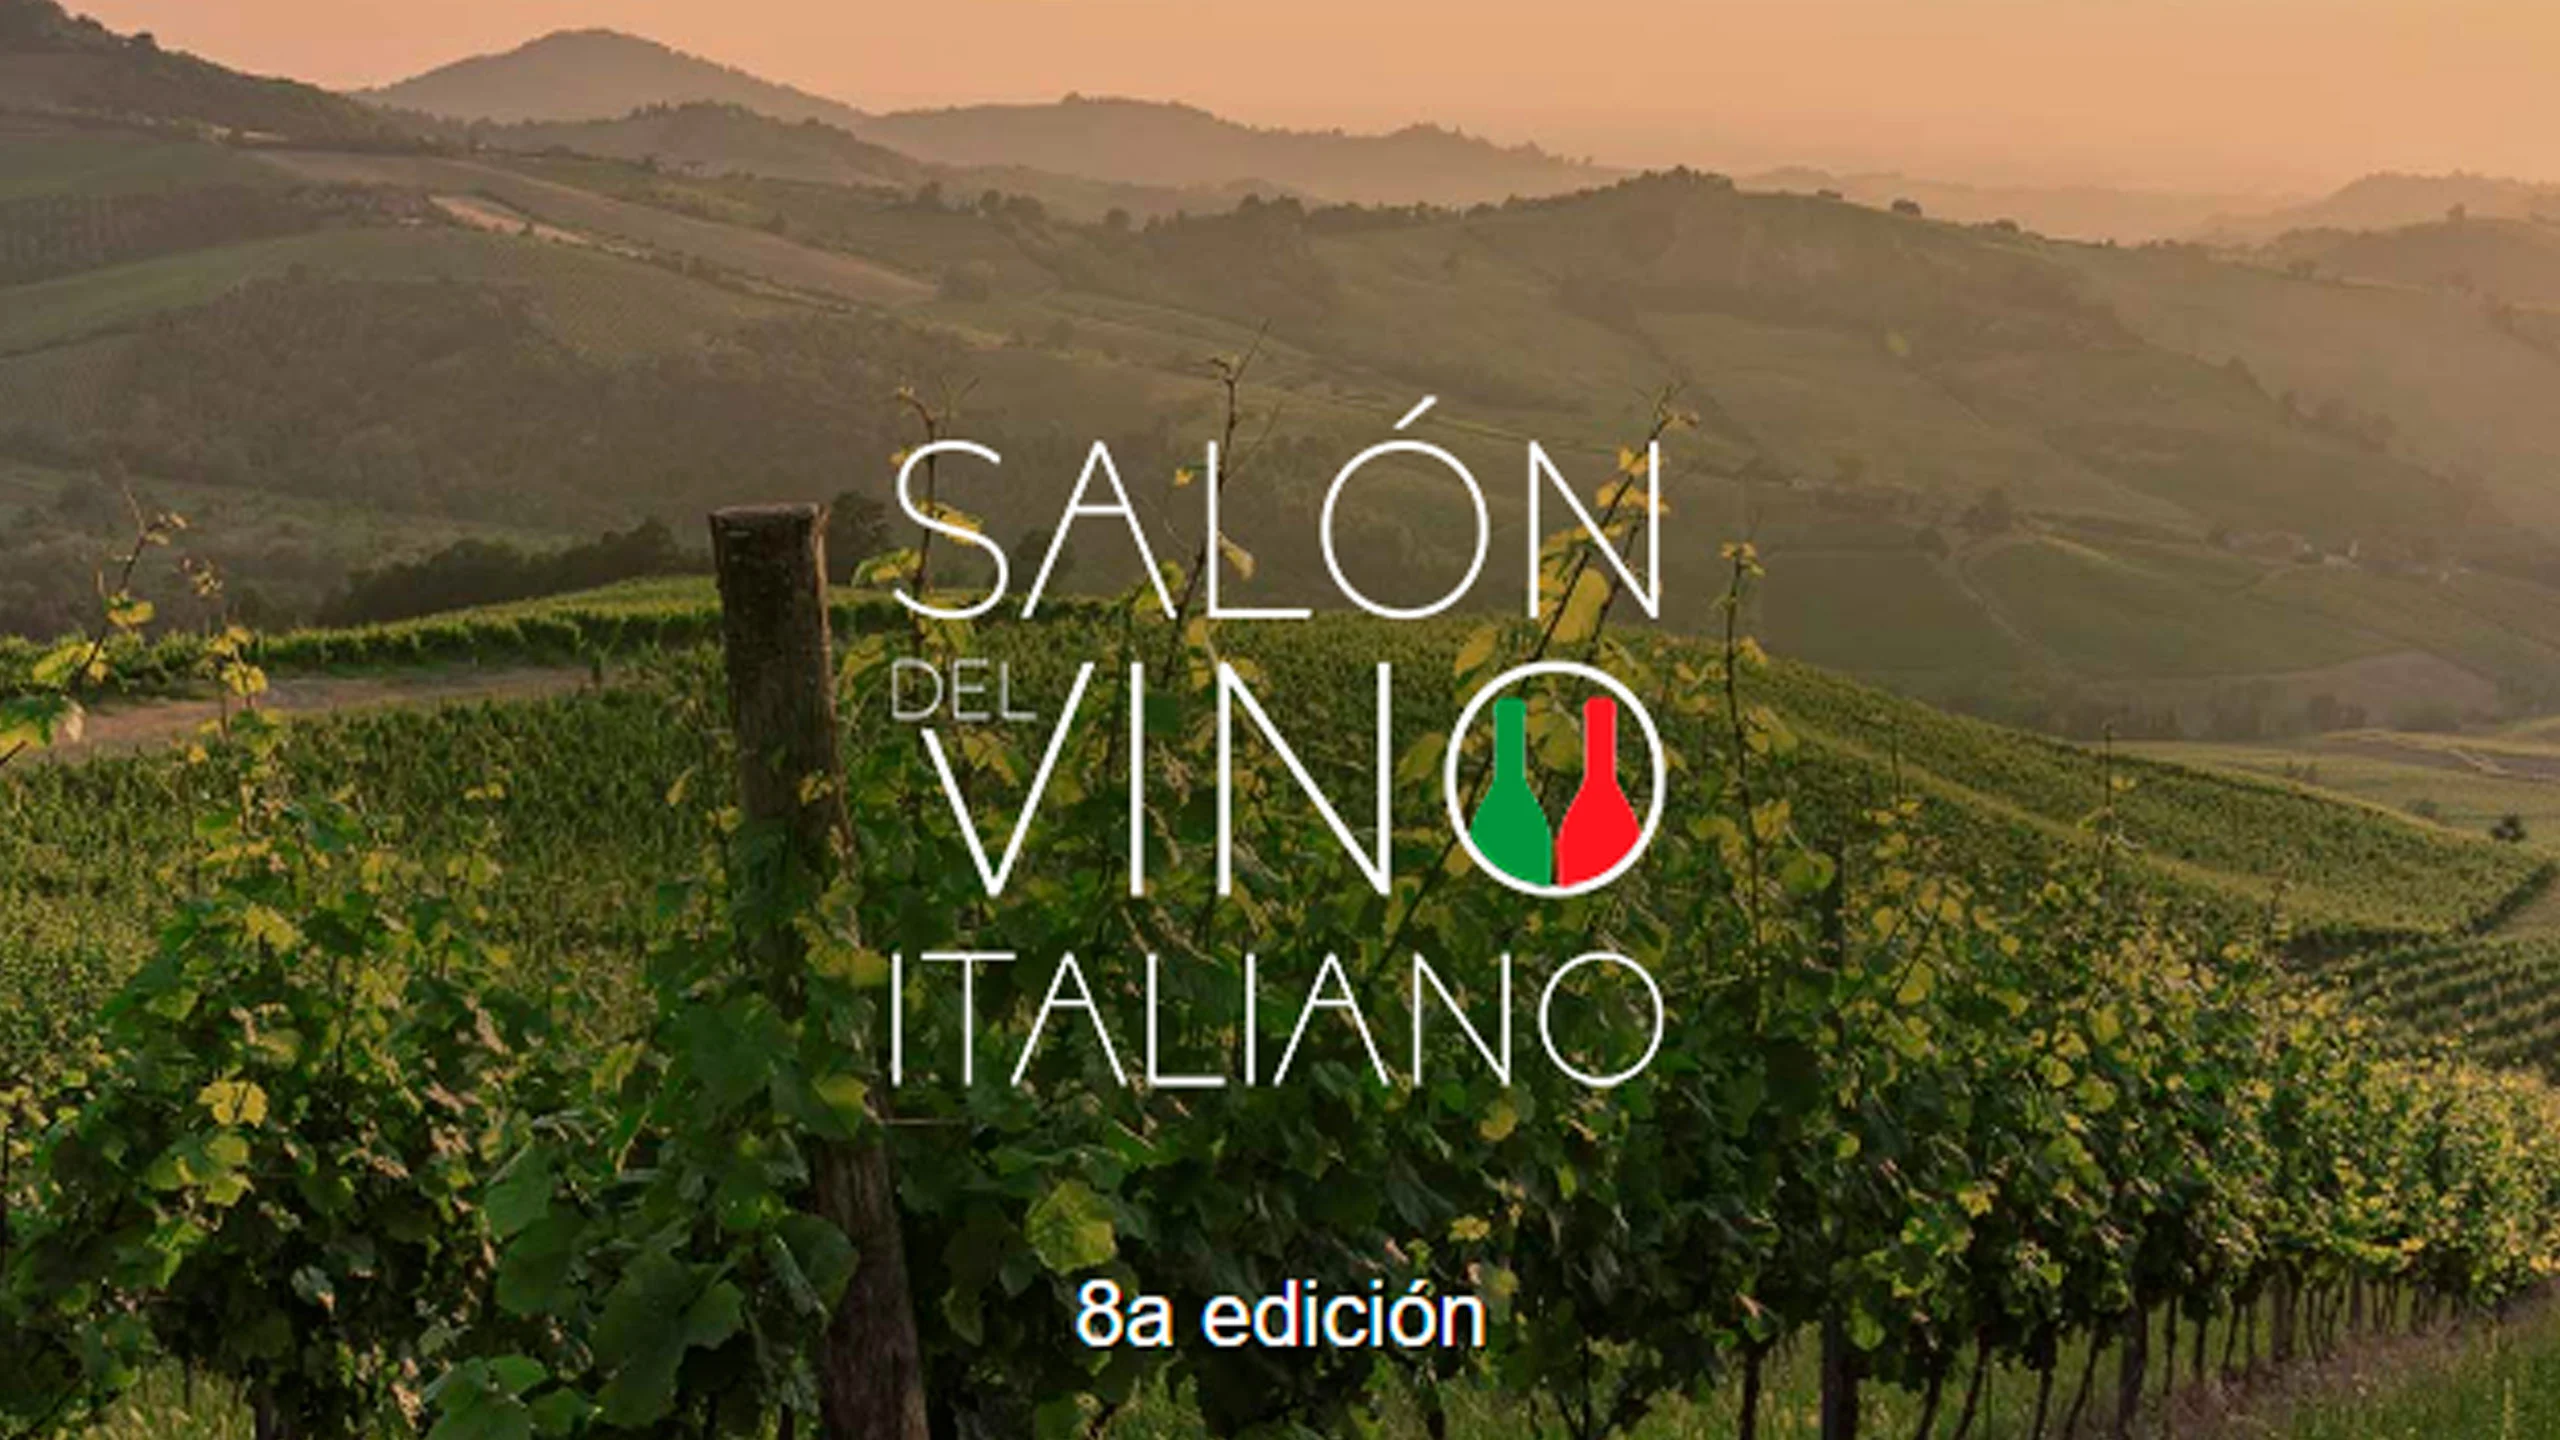 El Salón del Vino Italiano celebra su 8ª edición